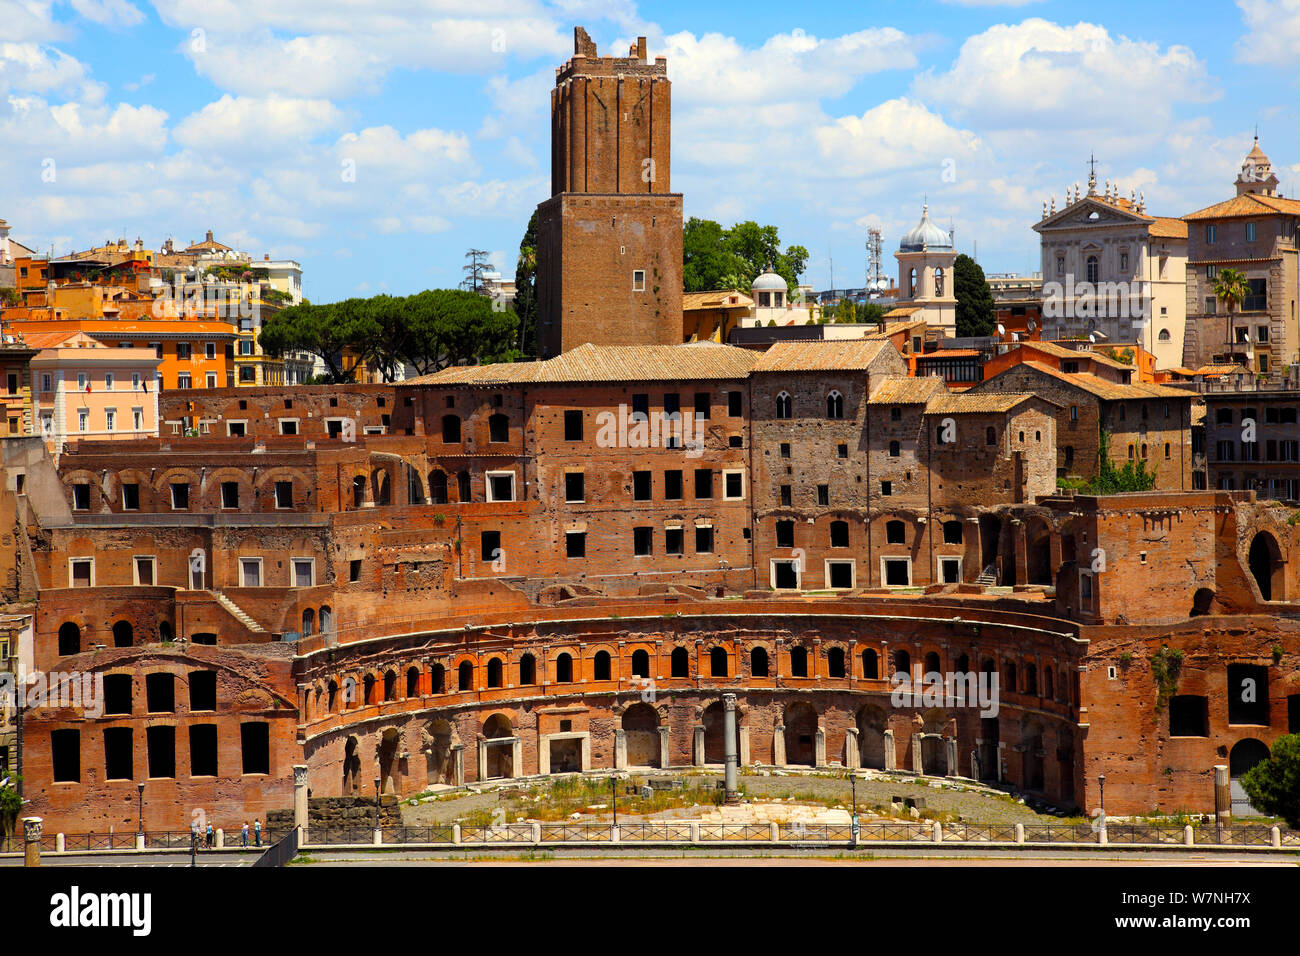 Mercati di Traiano (Mercati di Traiano) e la Torre delle Milizie (torre Militia) in Roma Foto Stock